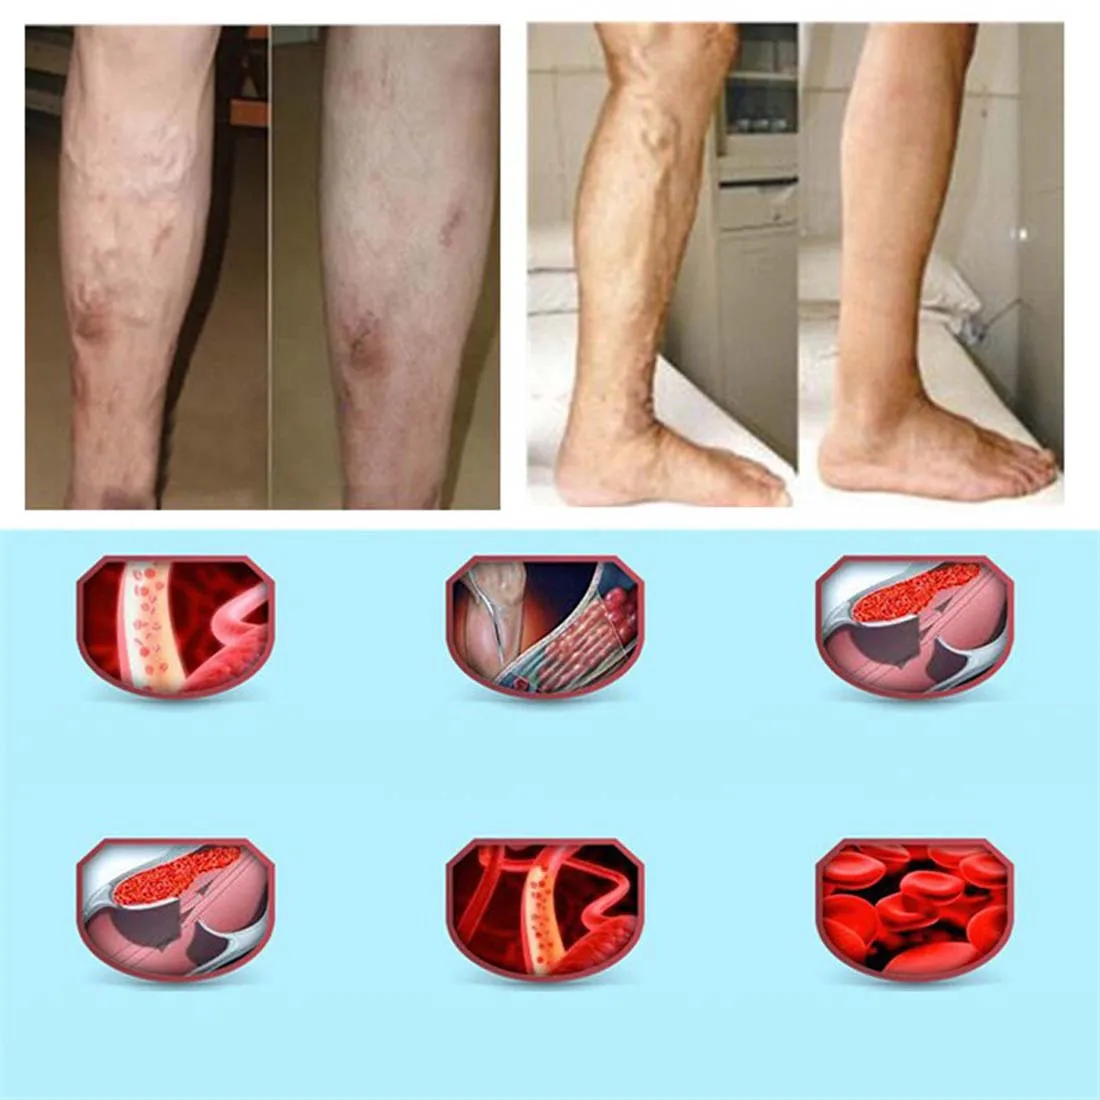 Ce operații sunt efectuate pentru varice la nivelul picioarelor?